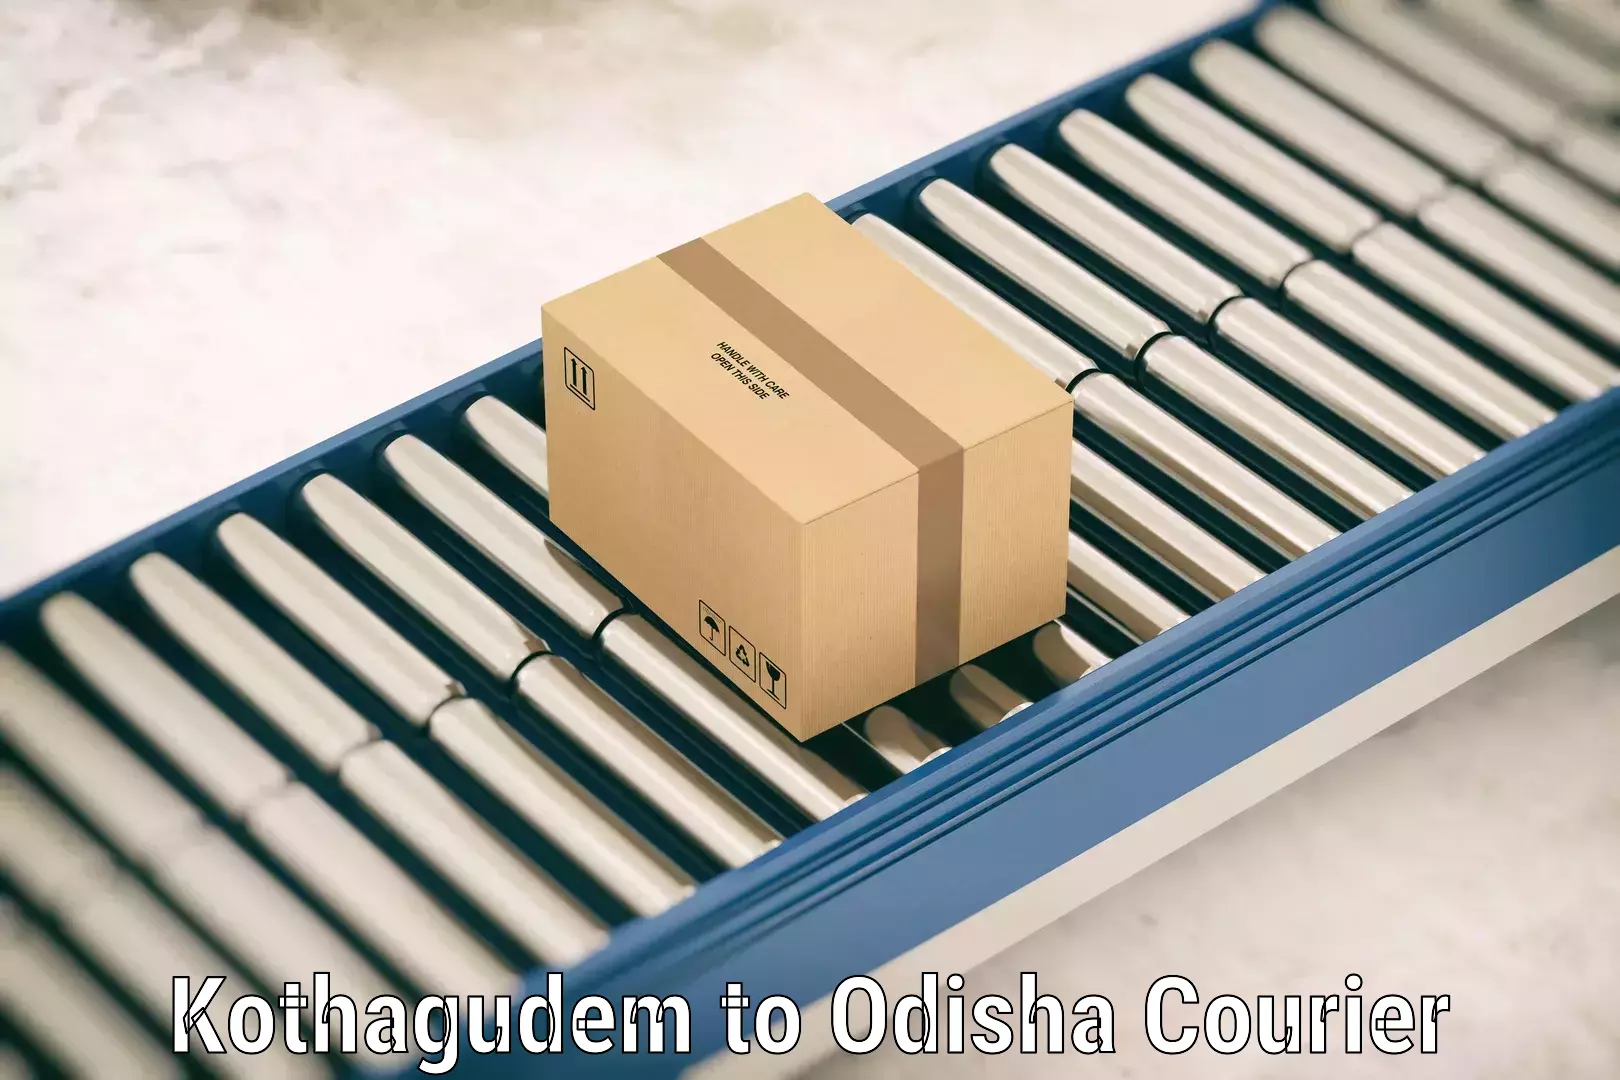 Luggage shipping specialists Kothagudem to Odisha